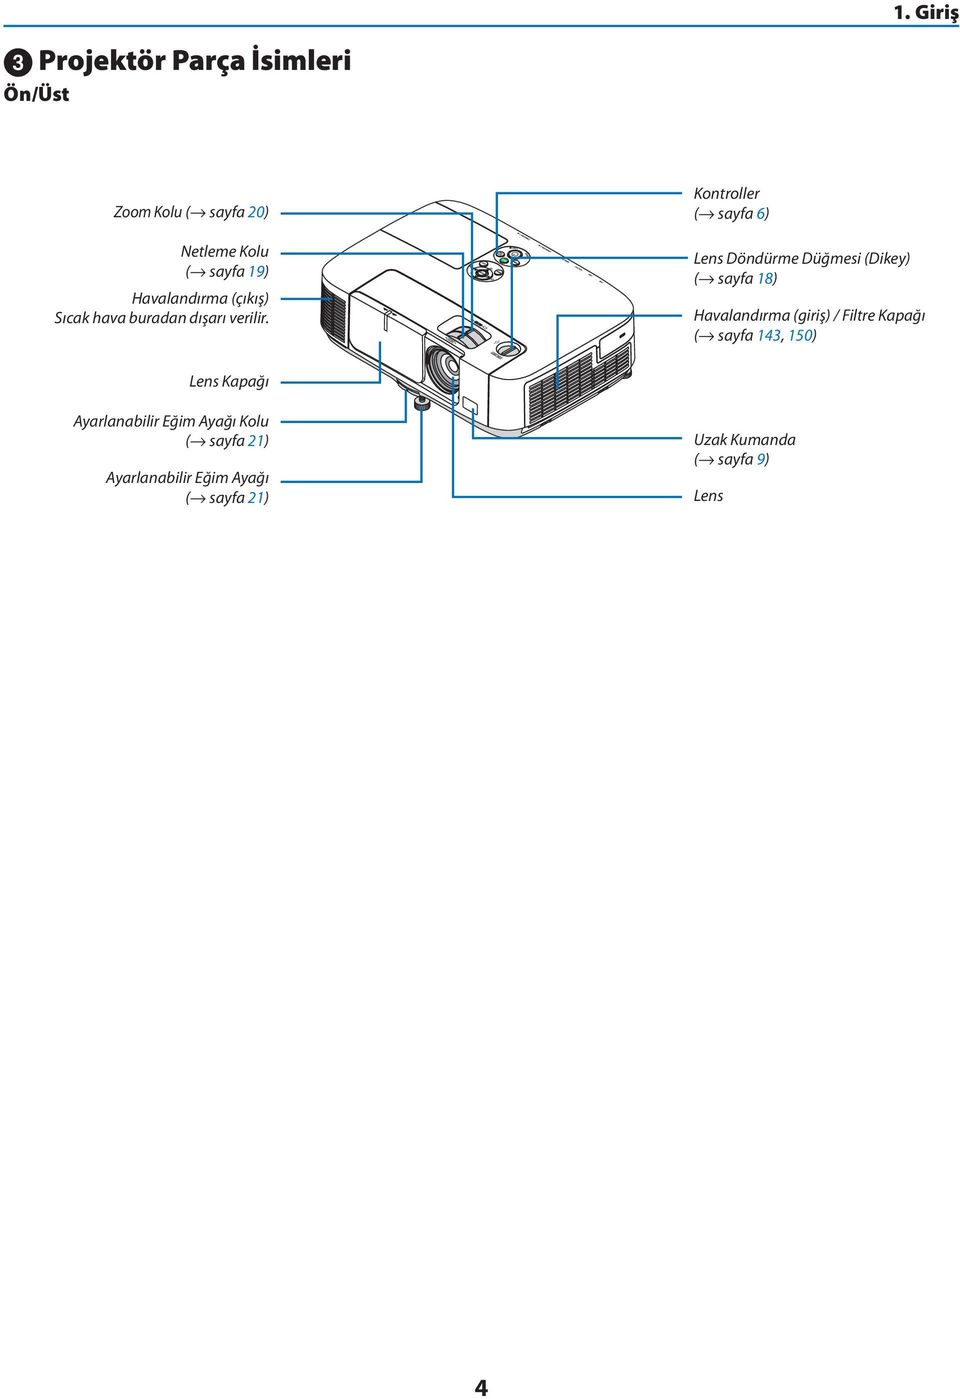 Kontroller ( sayfa 6) Lens Döndürme Düğmesi (Dikey) ( sayfa 18) Havalandırma (giriş) / Filtre